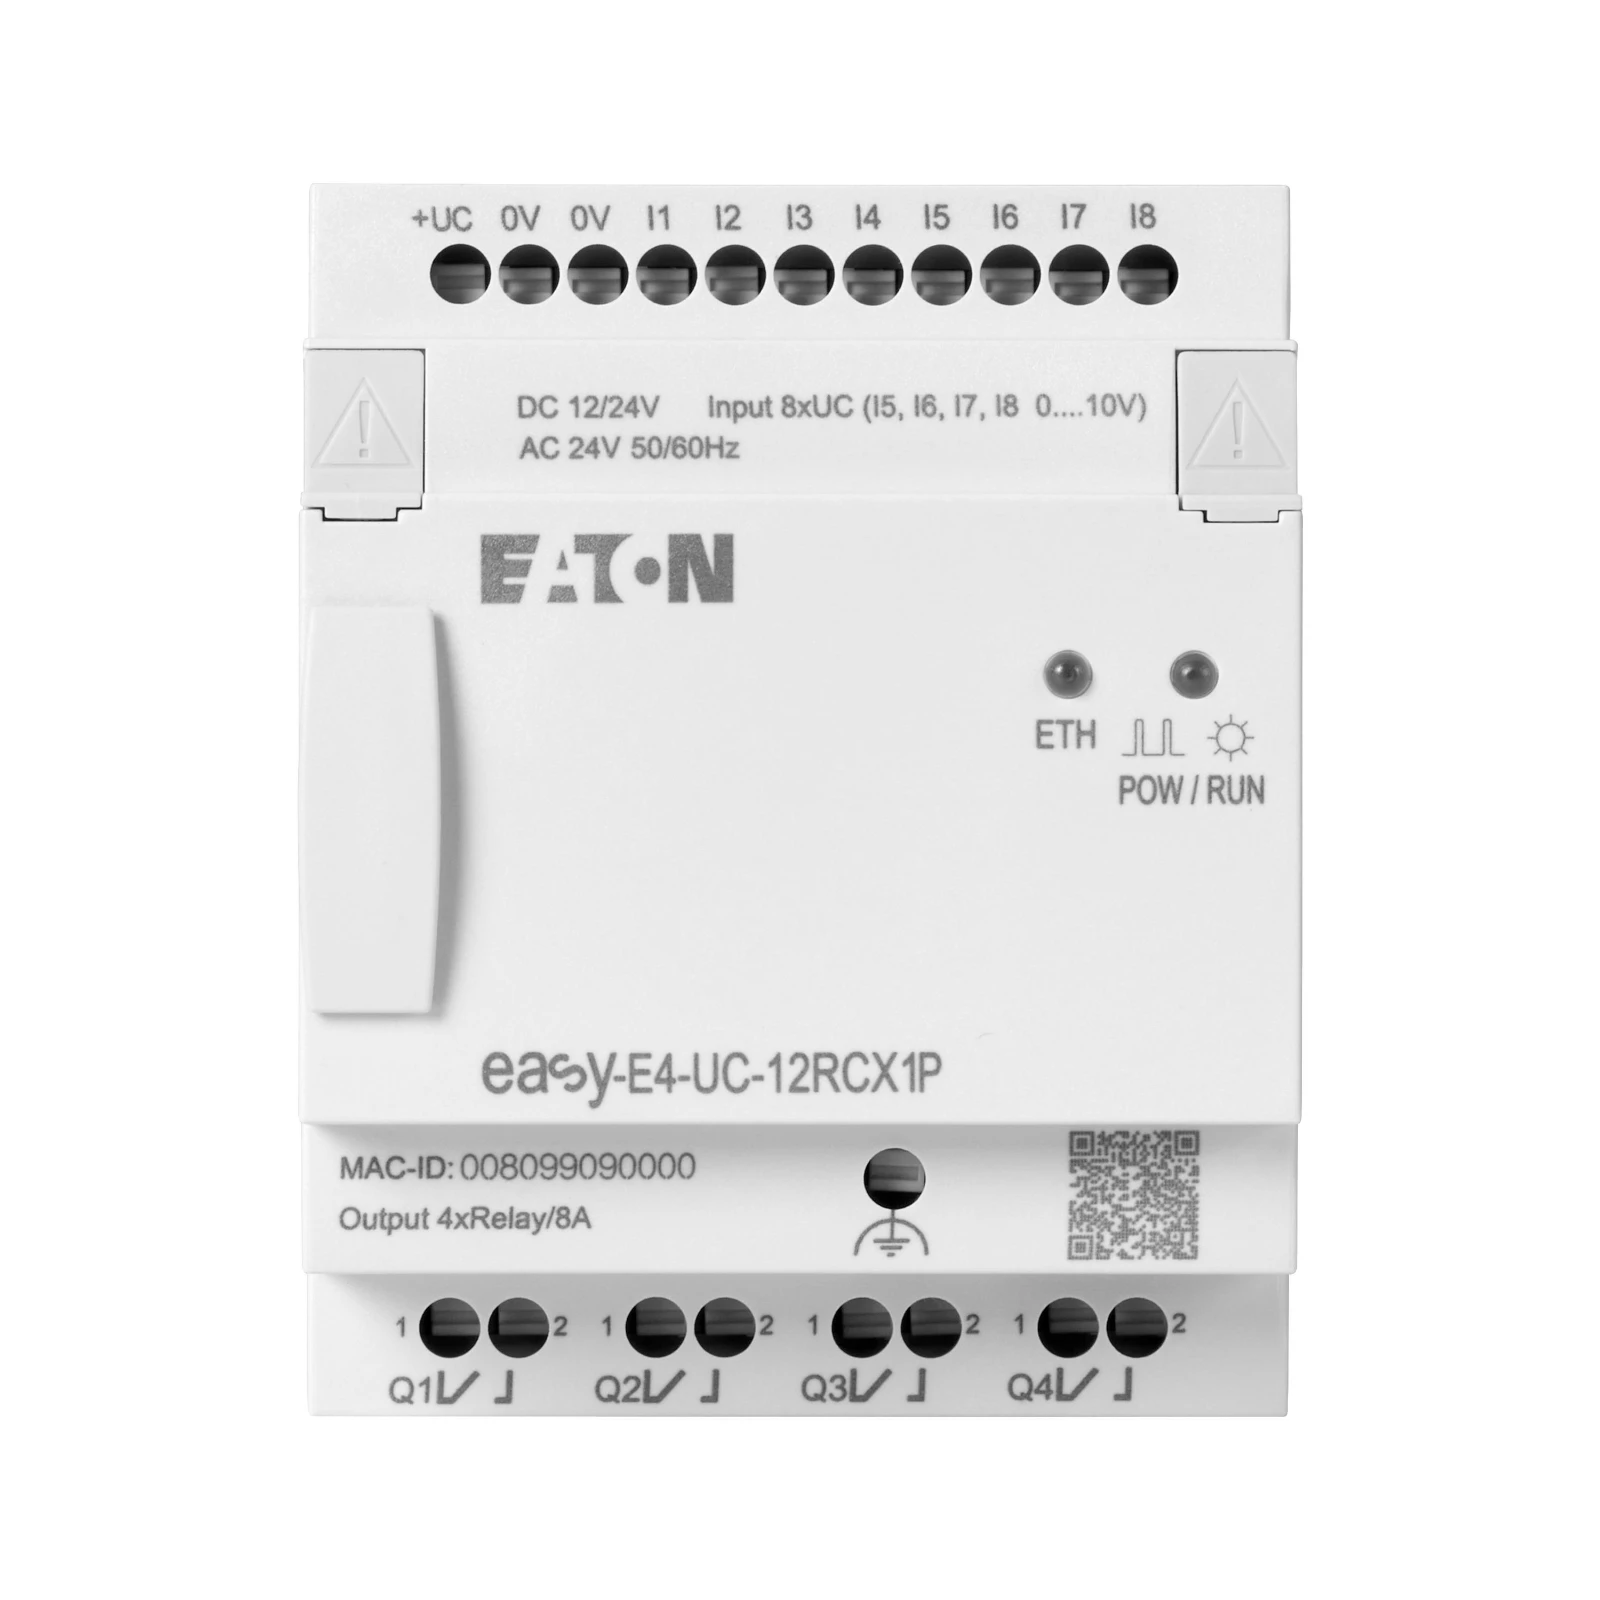 1621283 - Eaton EASY-E4-UC-12RCX1P